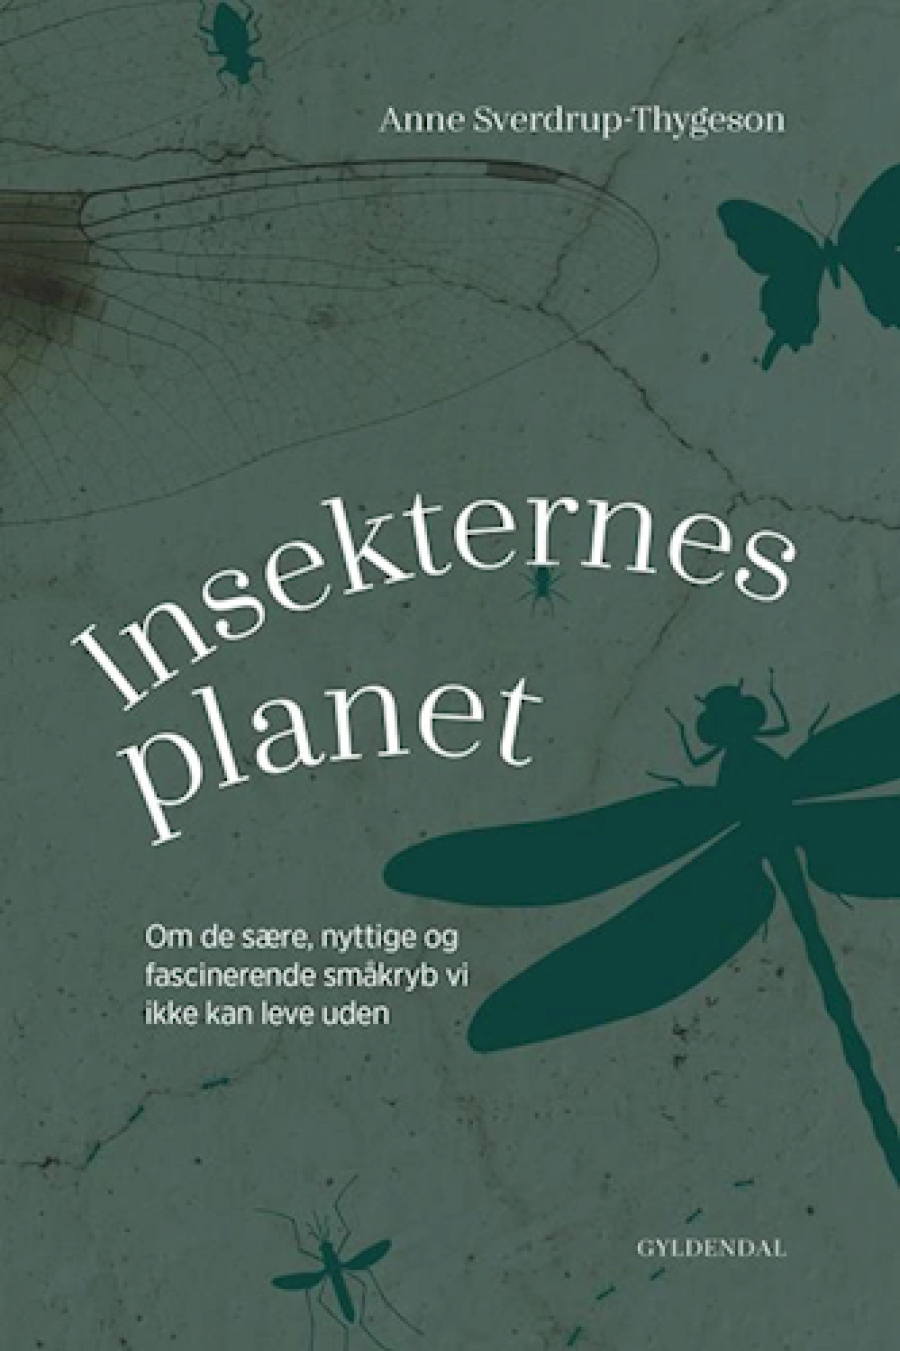 Forside på Anne Sverdrup-Thygesons "Insekternes Planet"